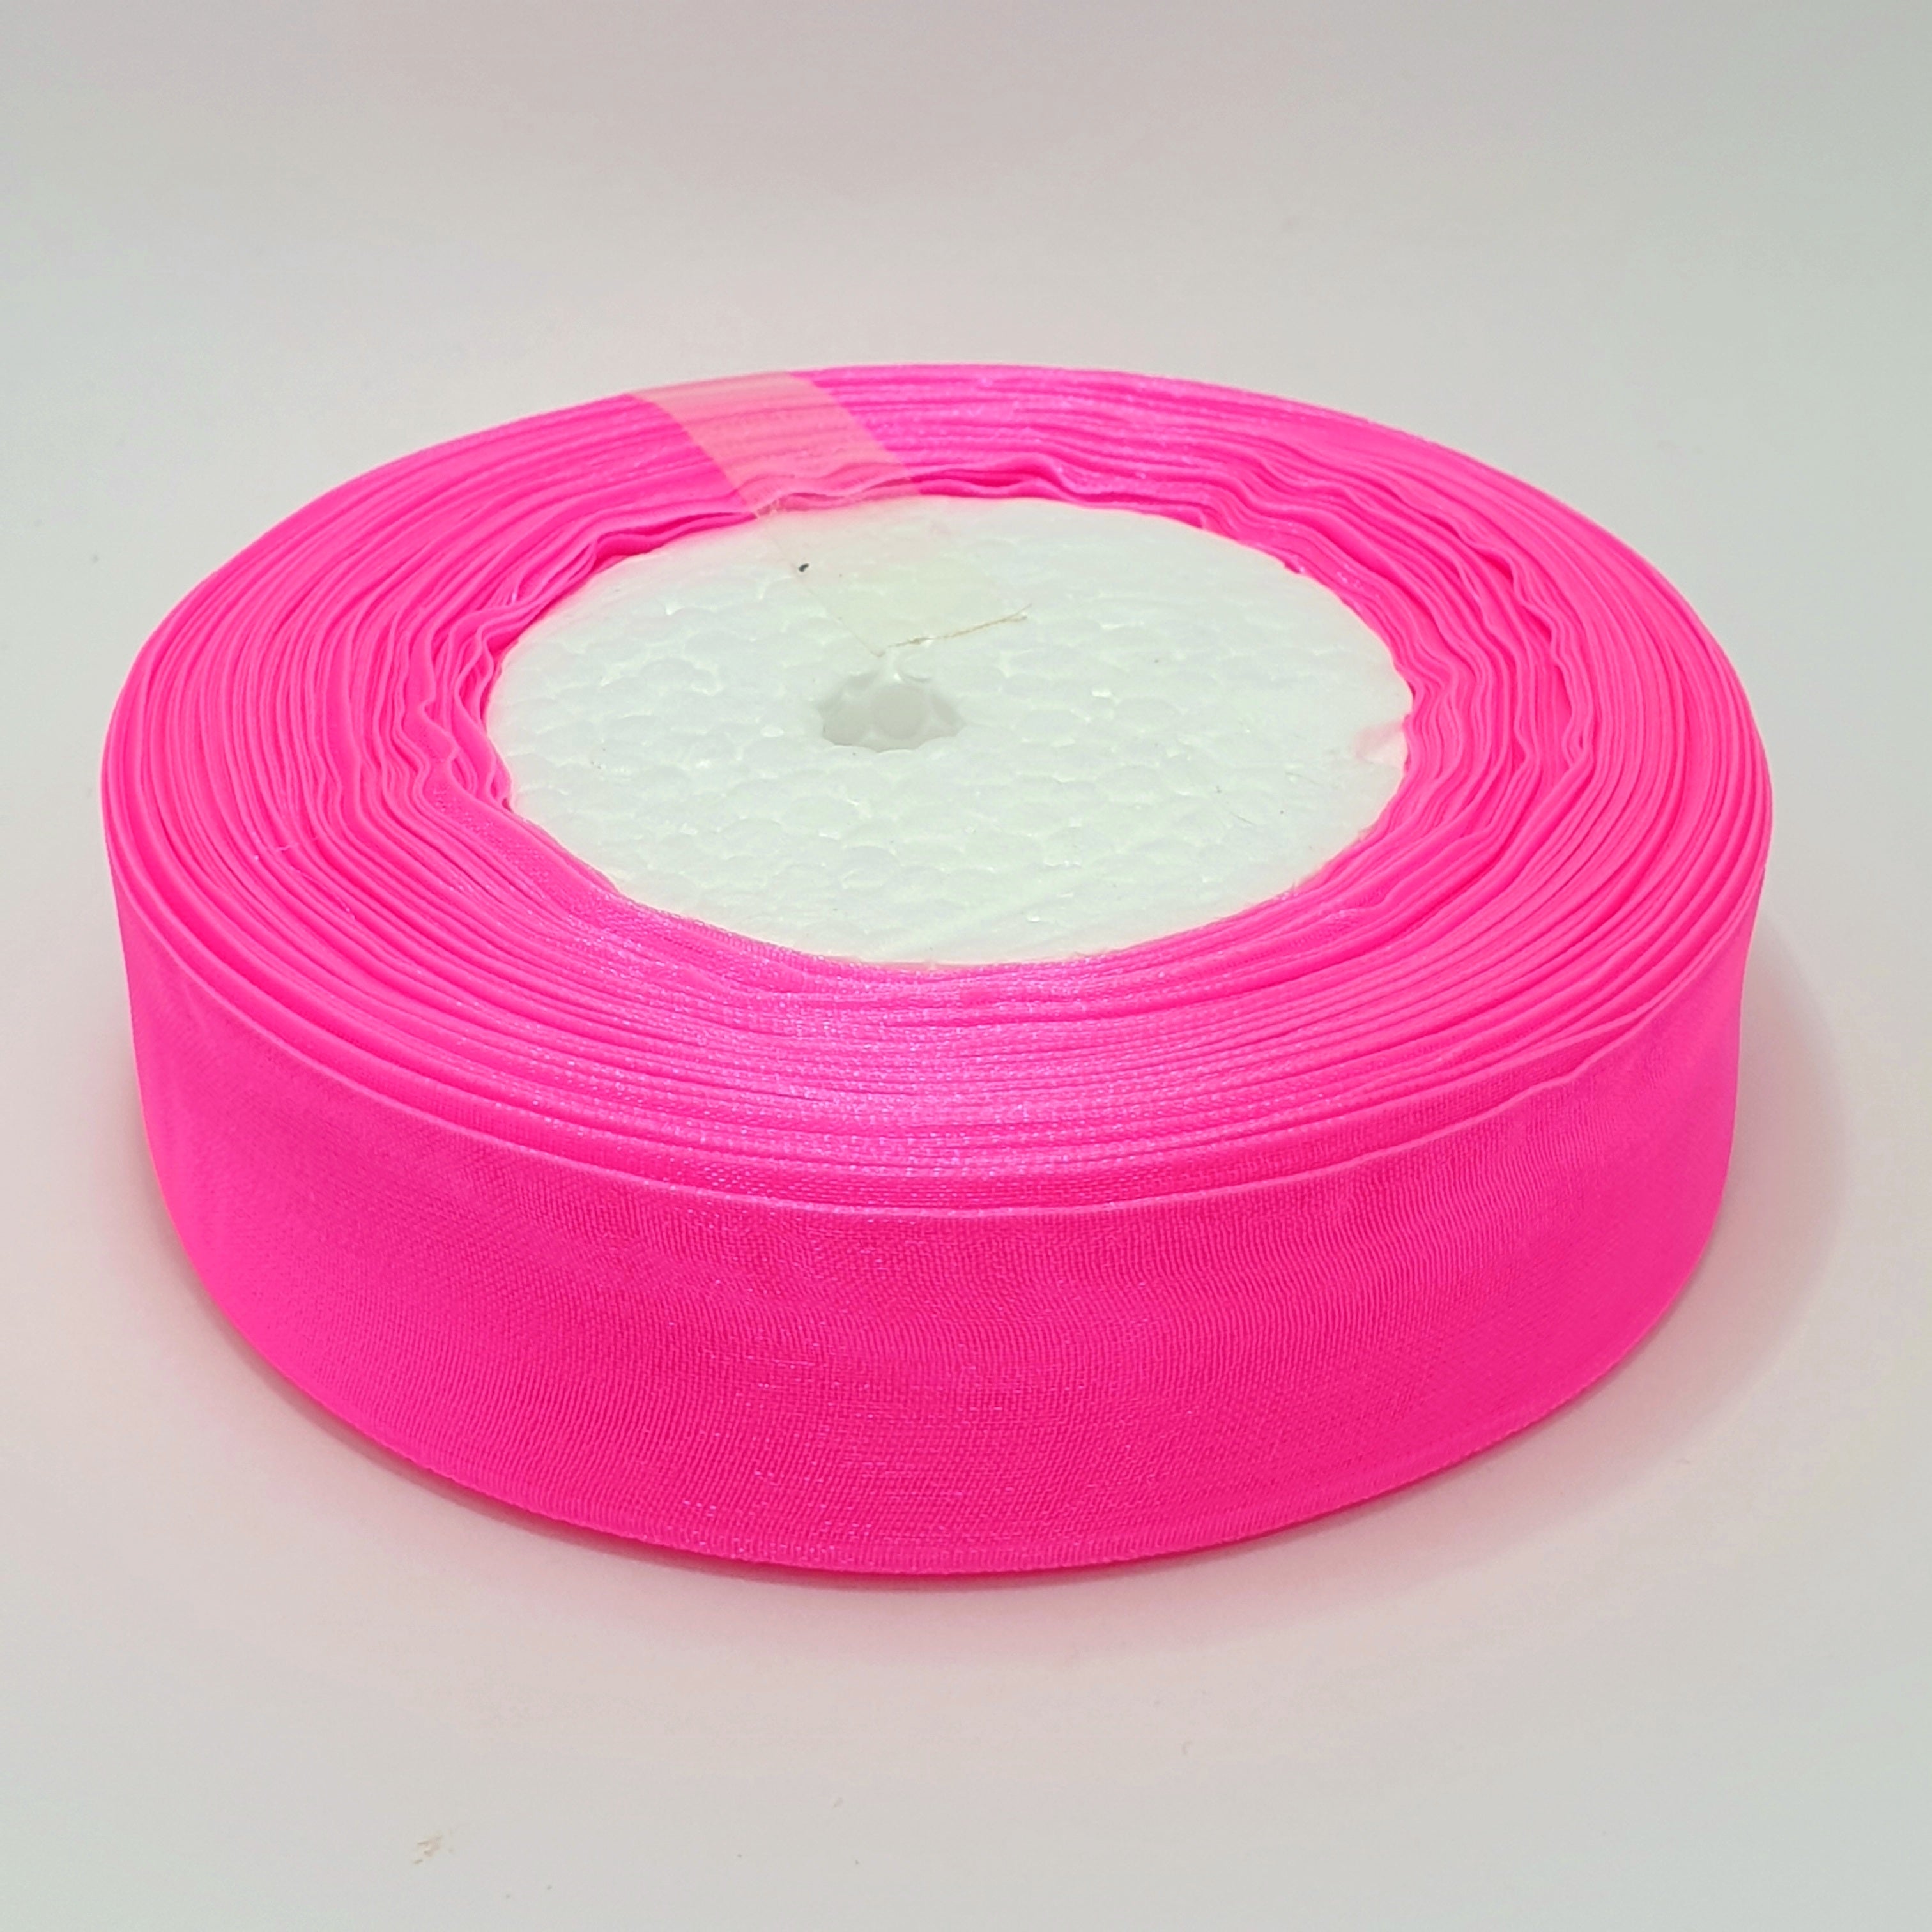 MajorCrafts 25mm 45metres Sheer Organza Fabric Ribbon Roll Bright Pink Shade R1027